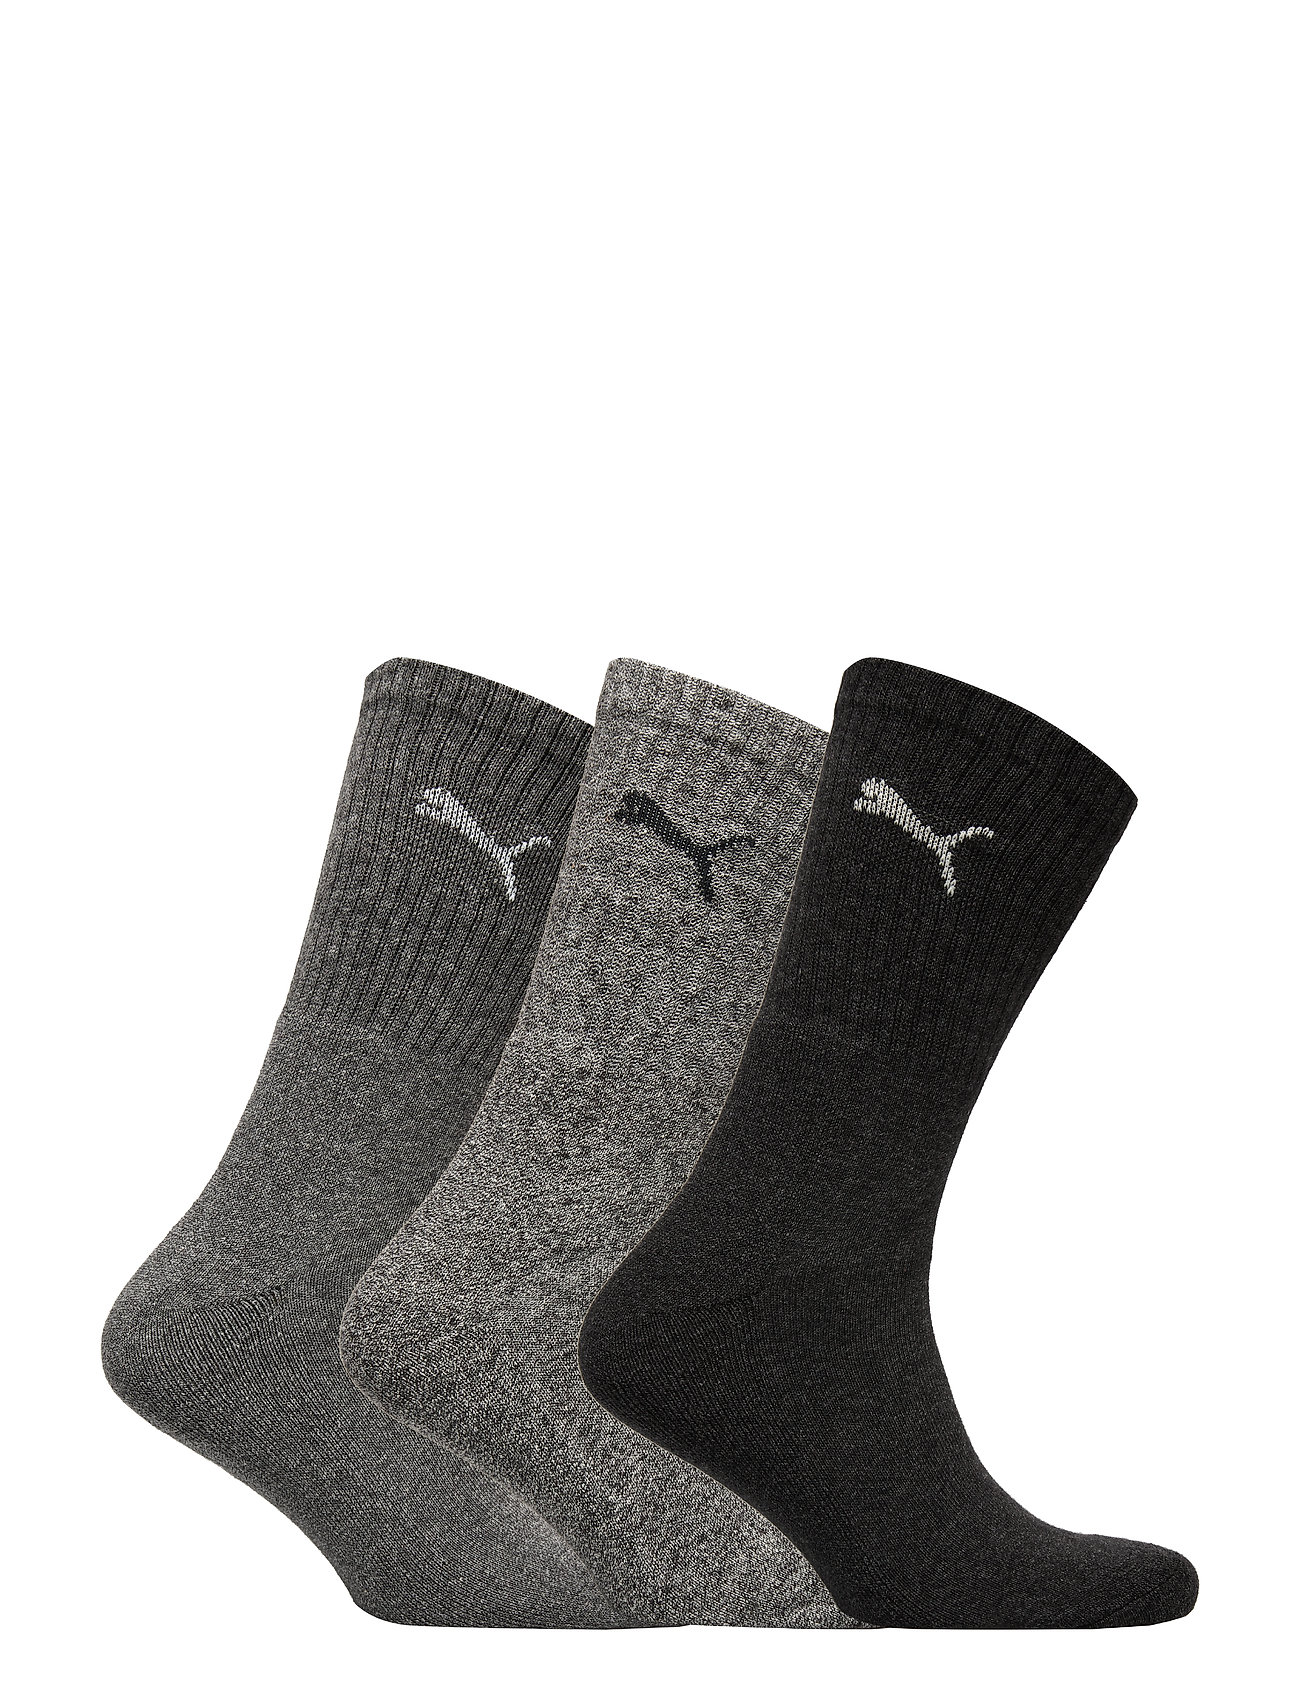 PUMA - PUMA CREW SOCK 3P - lot de paires de chaussettes - anthracite / grey - 1